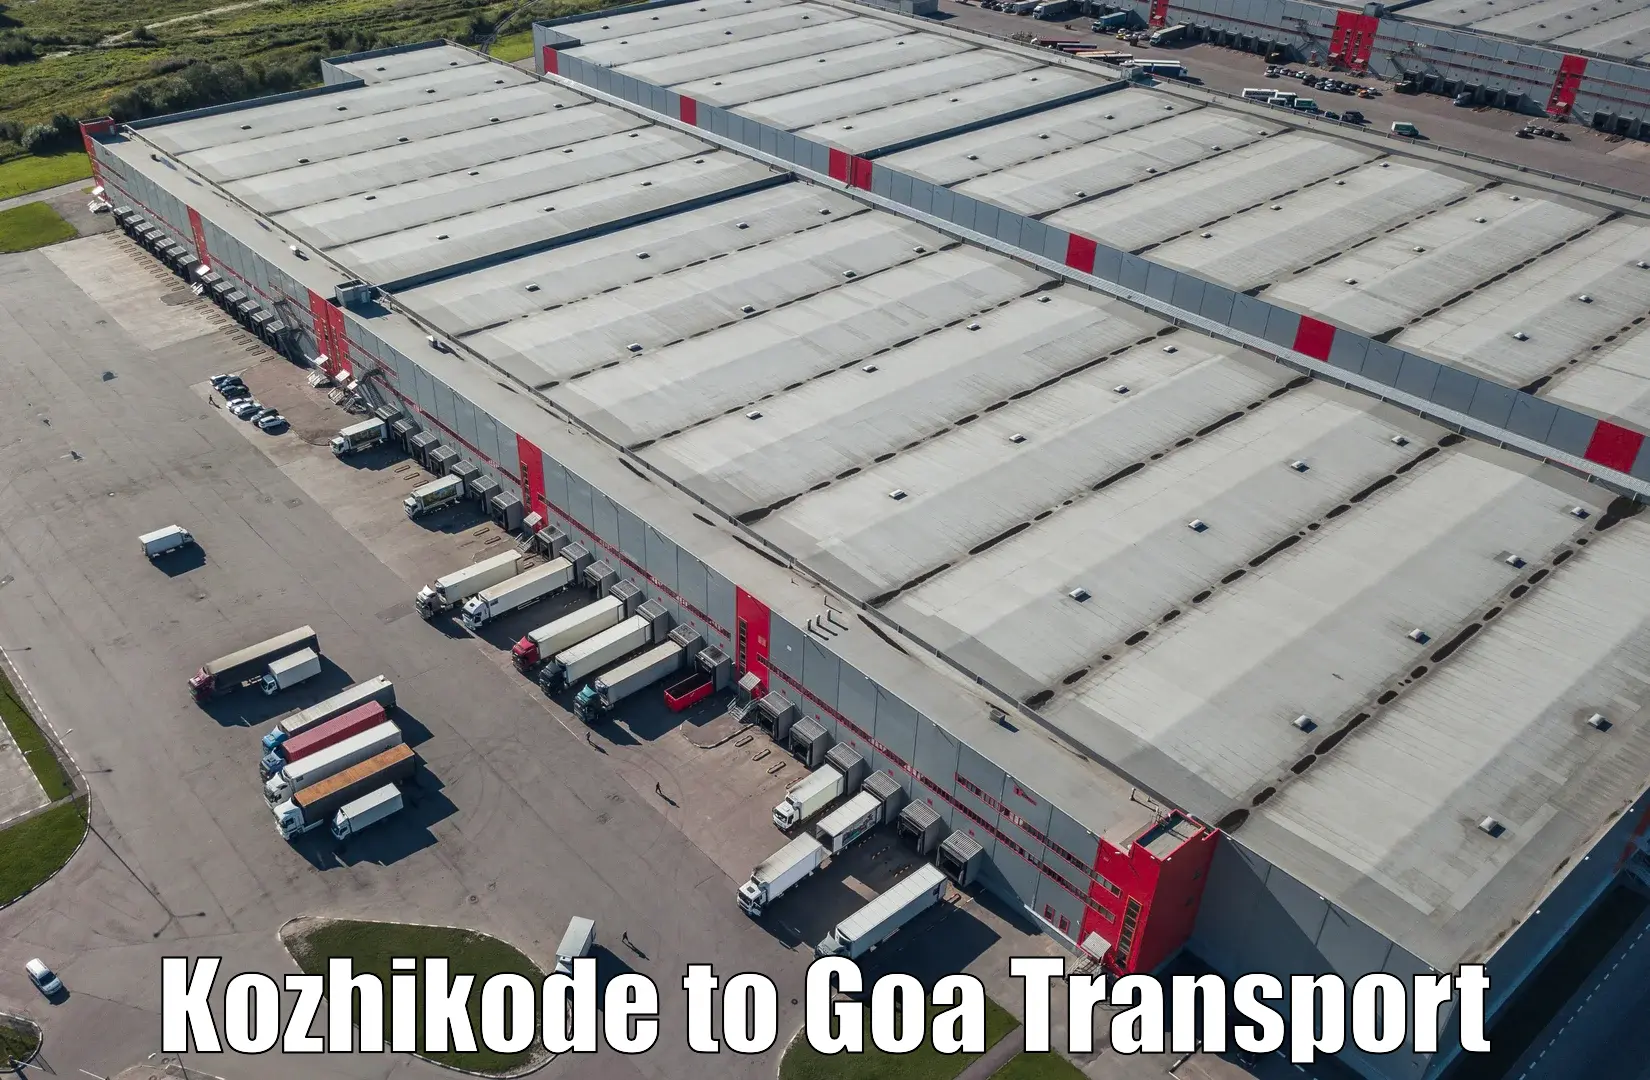 Transport in sharing Kozhikode to Bicholim